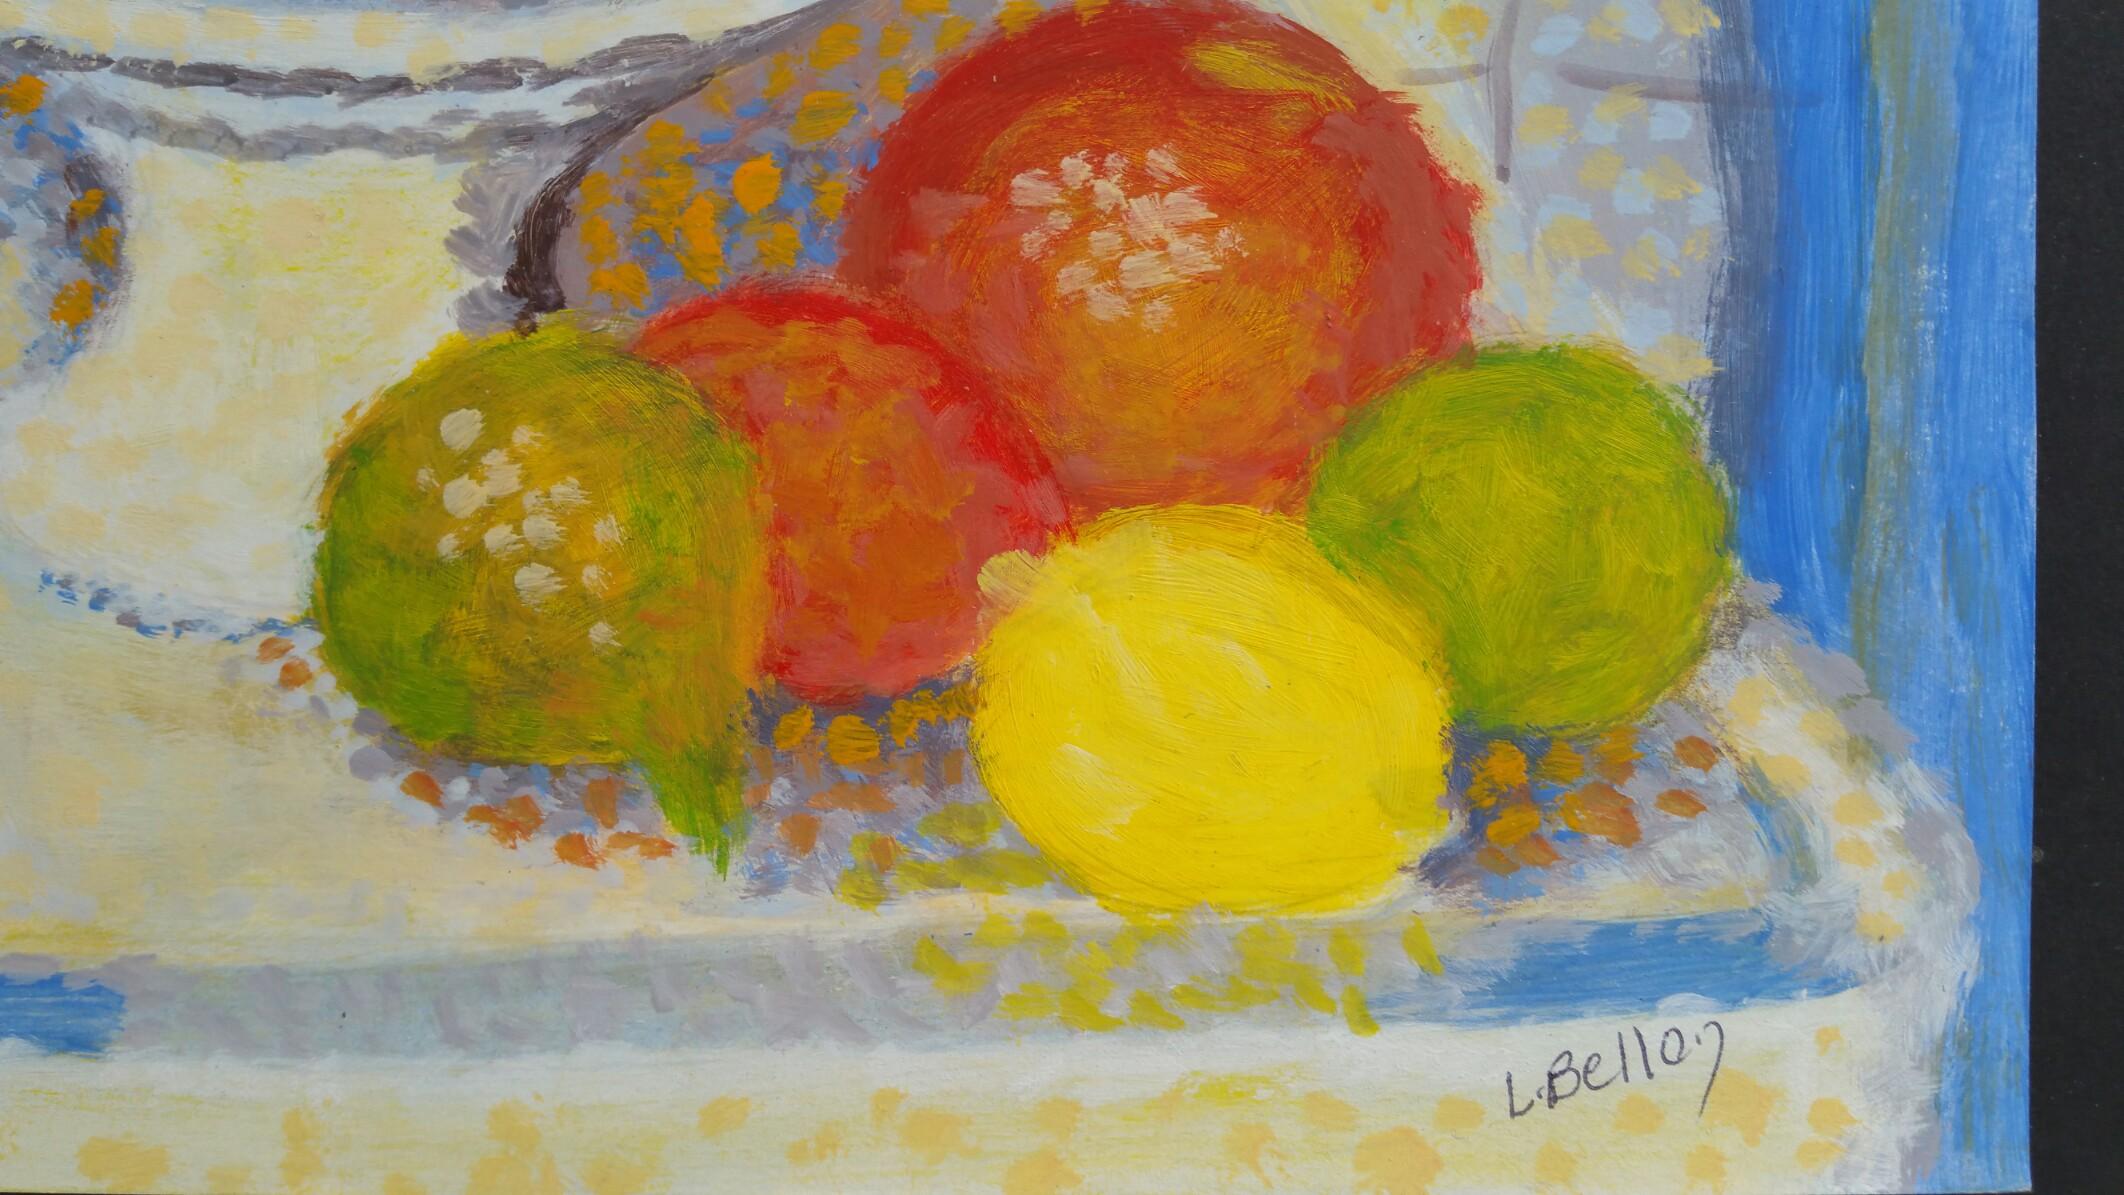 Neoimpressionistisches Stilleben
von Louis Bellon (Französisch 1908-1998)
signiert unten rechts
gouache-Malerei auf Papier, ungerahmt
abmessungen: 10 x 12,75 Zoll

provenienz: Privatsammlung des Künstlers, Provence, Frankreich

Zustandsbericht: sehr